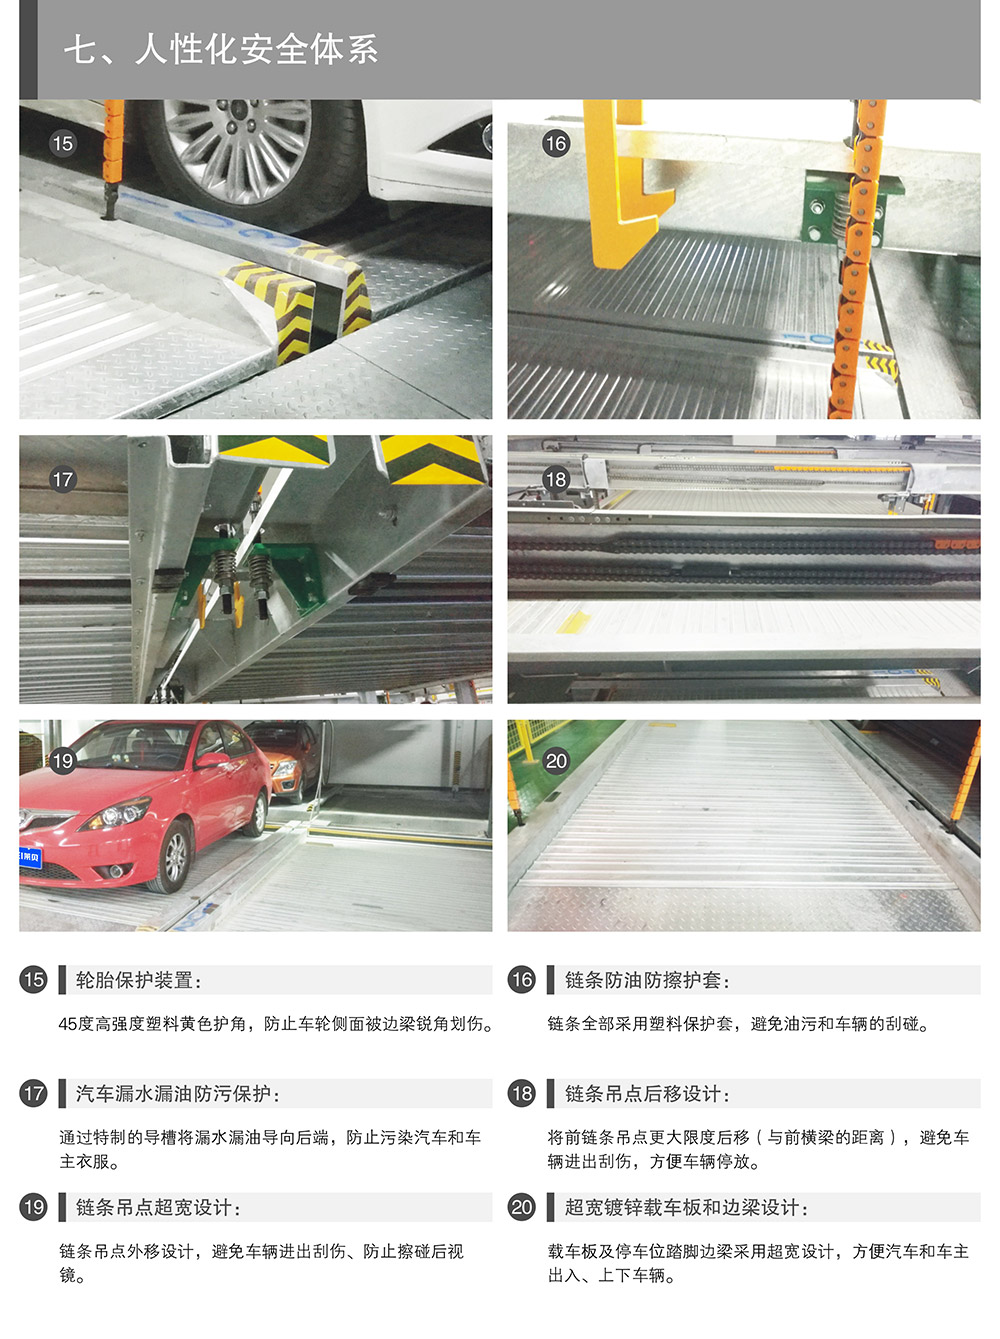 重庆负二正二地坑PSH4D2四层升降横移式立体停车设备人性化安全体系.jpg